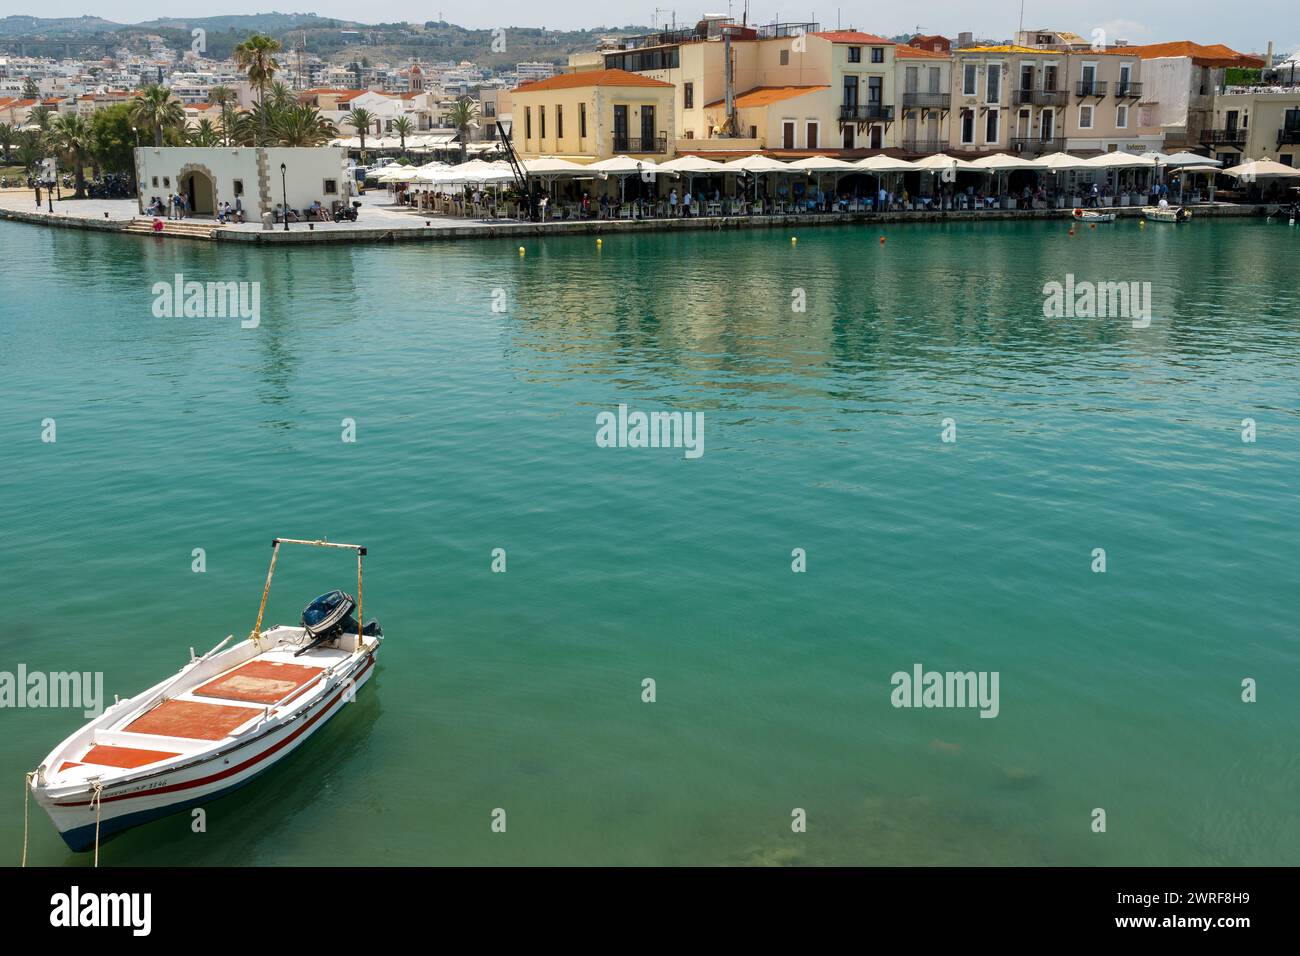 Una piccola barca presso lo storico porto veneziano nel cuore della città vecchia di Rethymno, Creta. Foto Stock